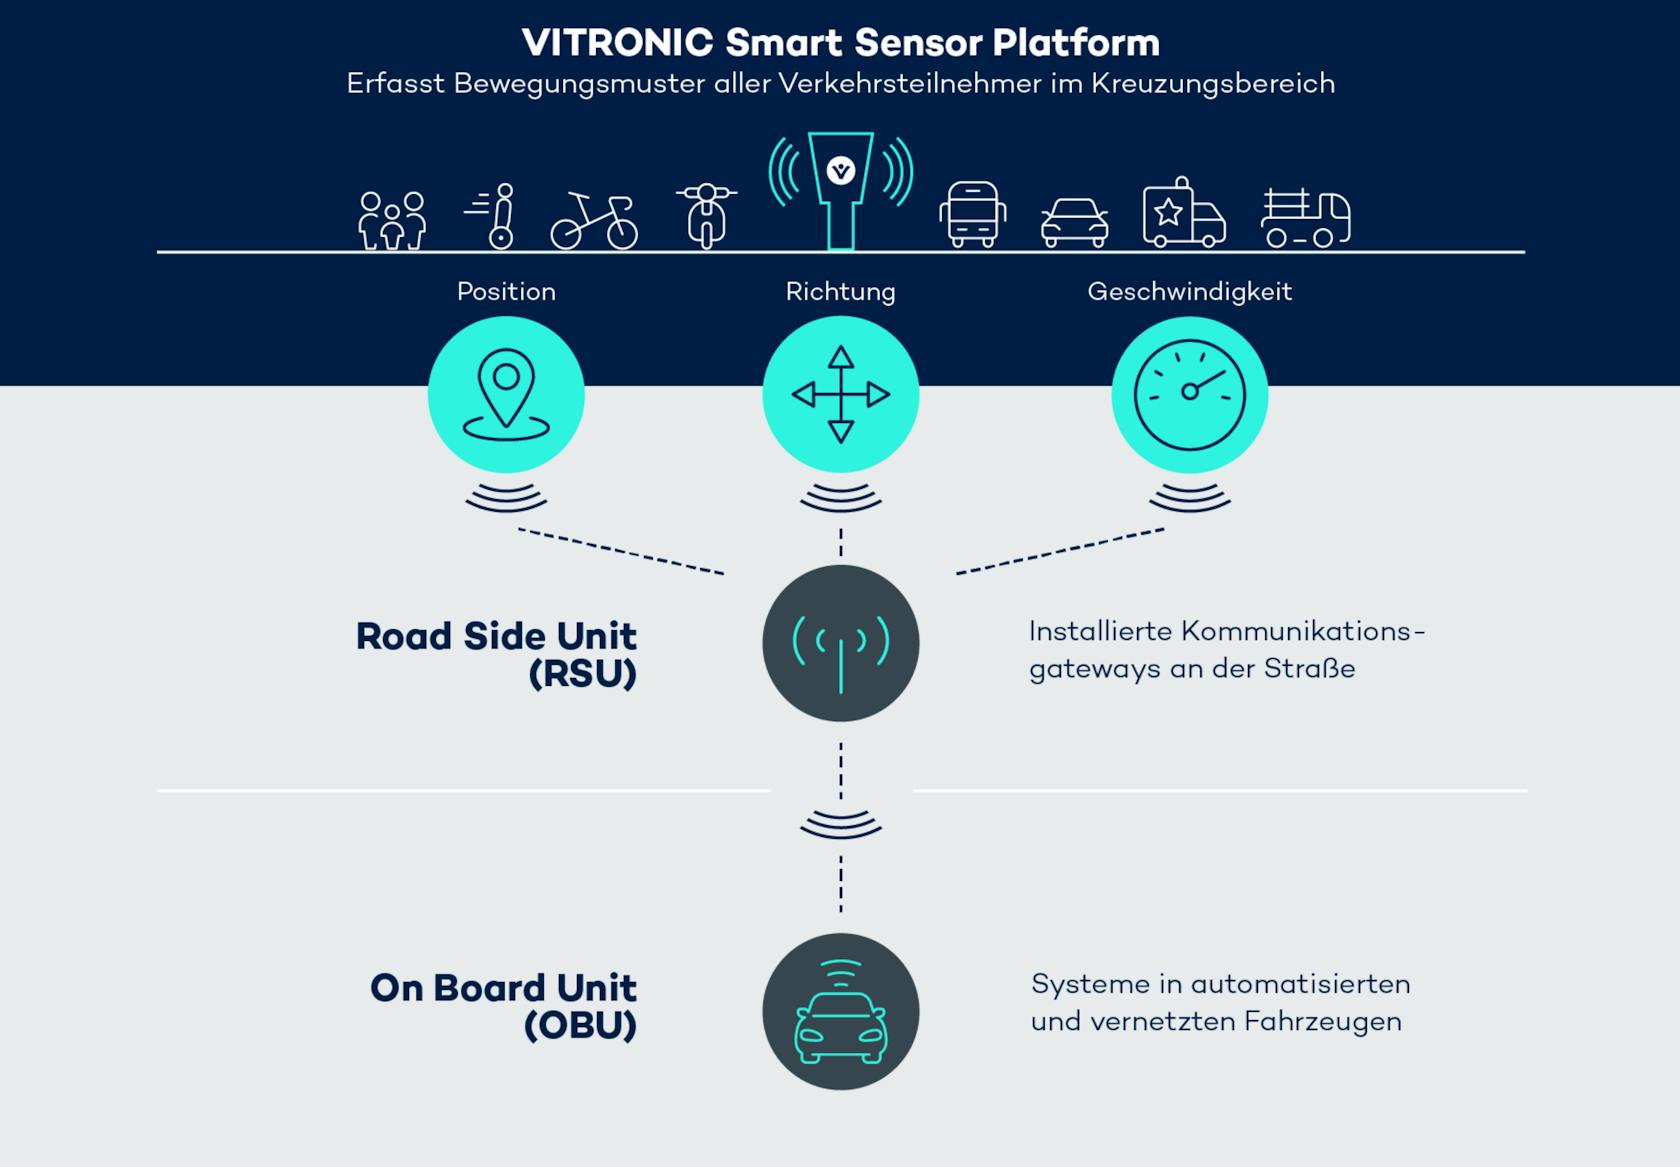 Die VITRONIC Smart Sensor Platform liefert über eine Road Side Unit Bewegungsdaten von Verkehrsteilnehmer an automatisierte Fahrzeuge, um mögliche Kollisionen zu verhindern.